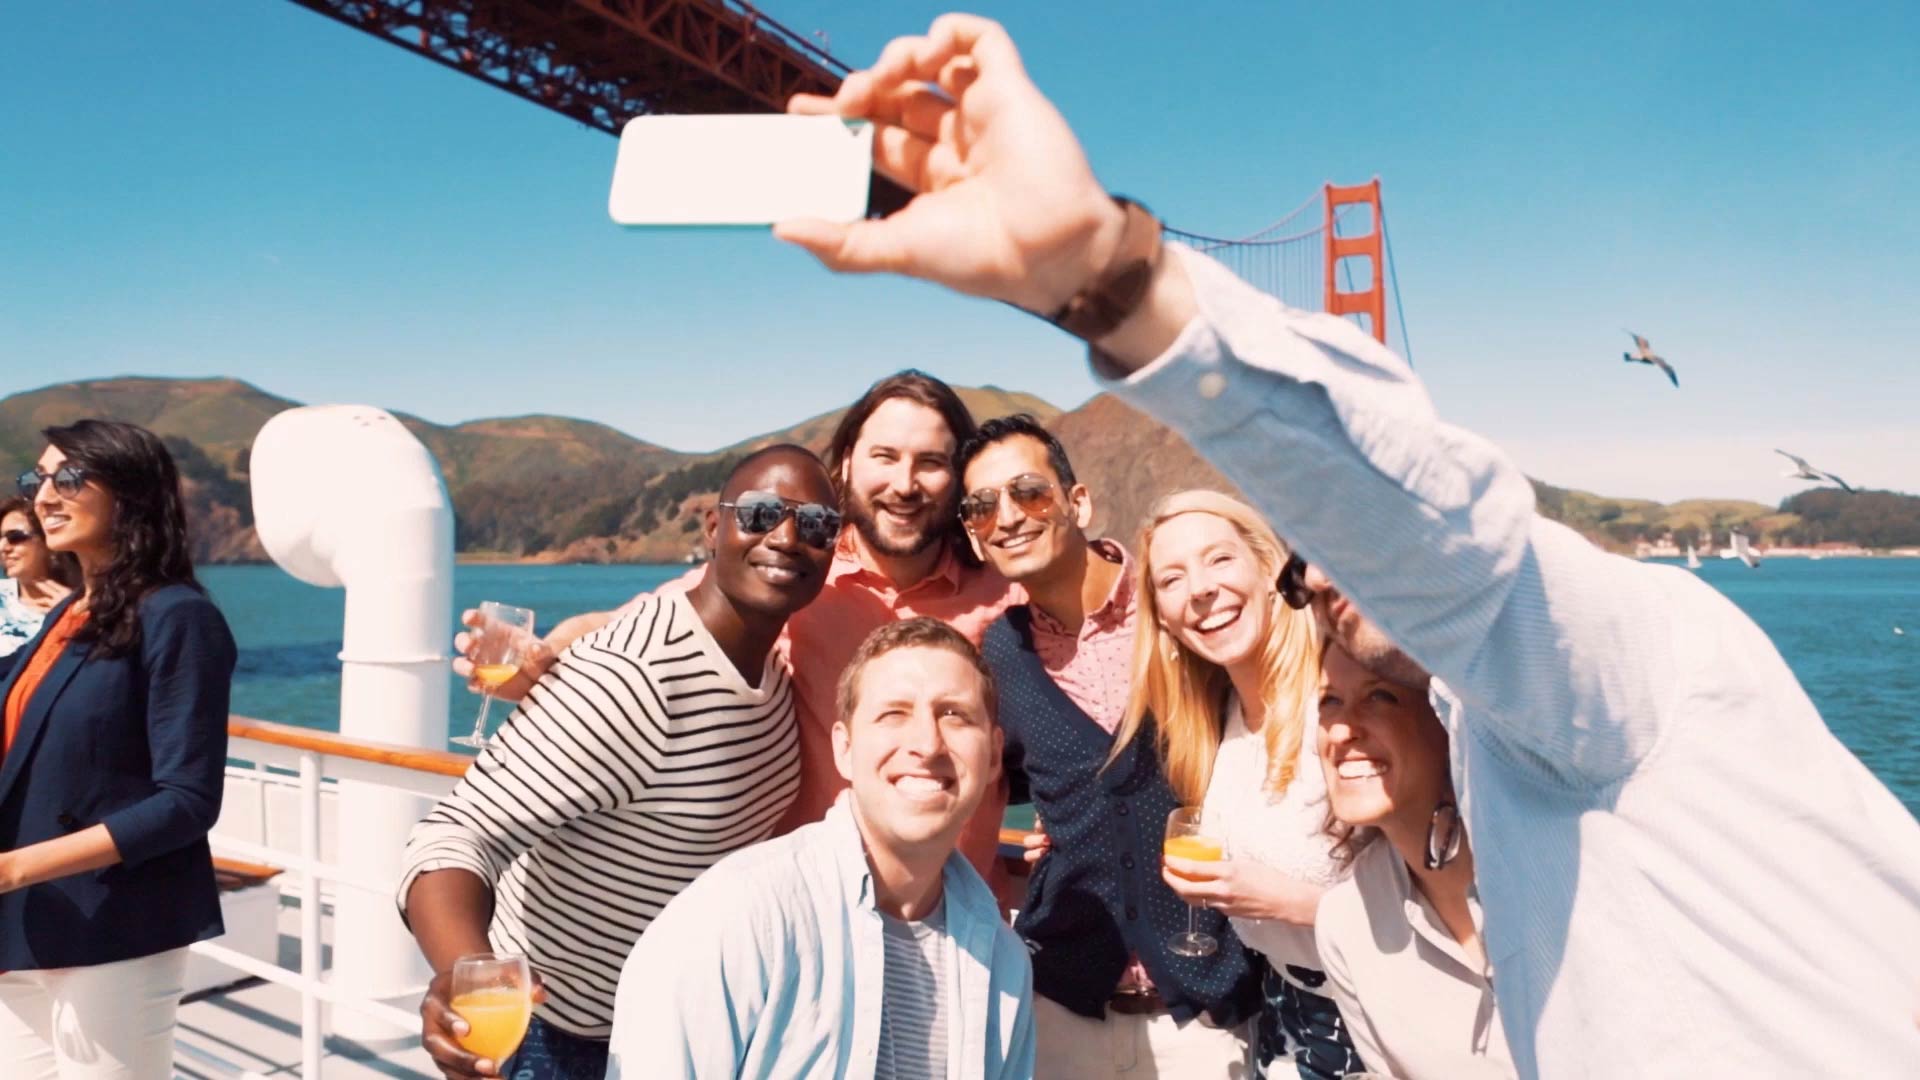 Selfie mit der Golden Gate Bridge im Hintergrund